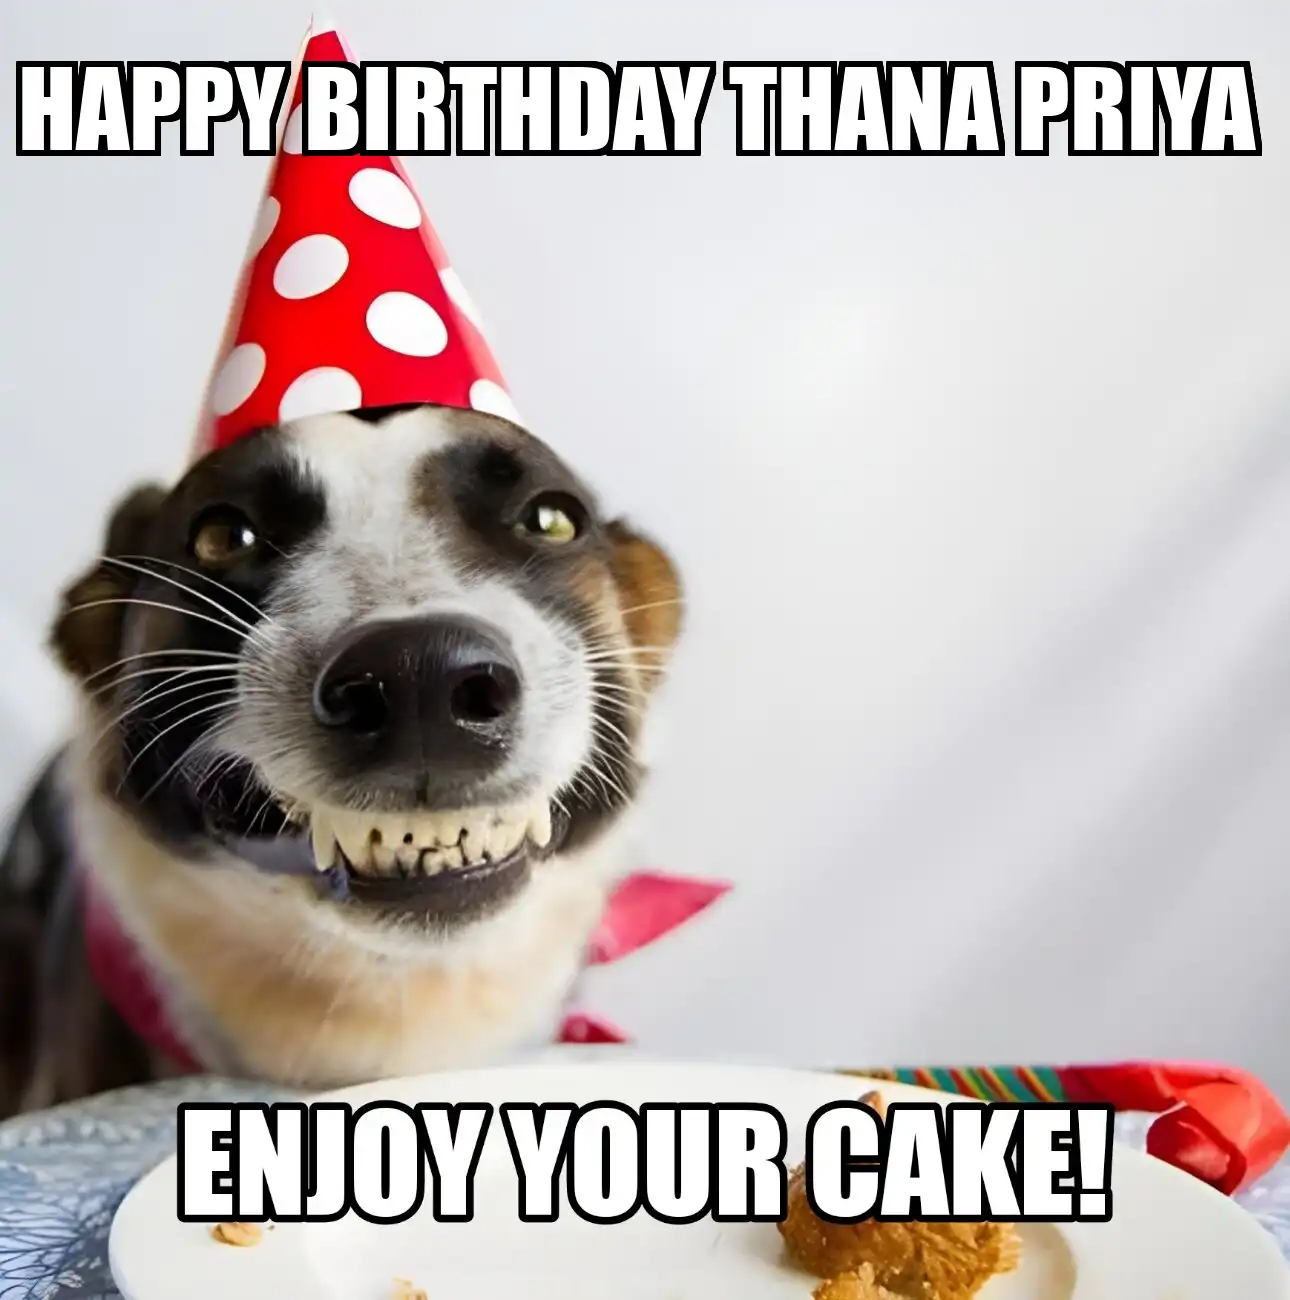 Happy Birthday Thana priya Enjoy Your Cake Dog Meme